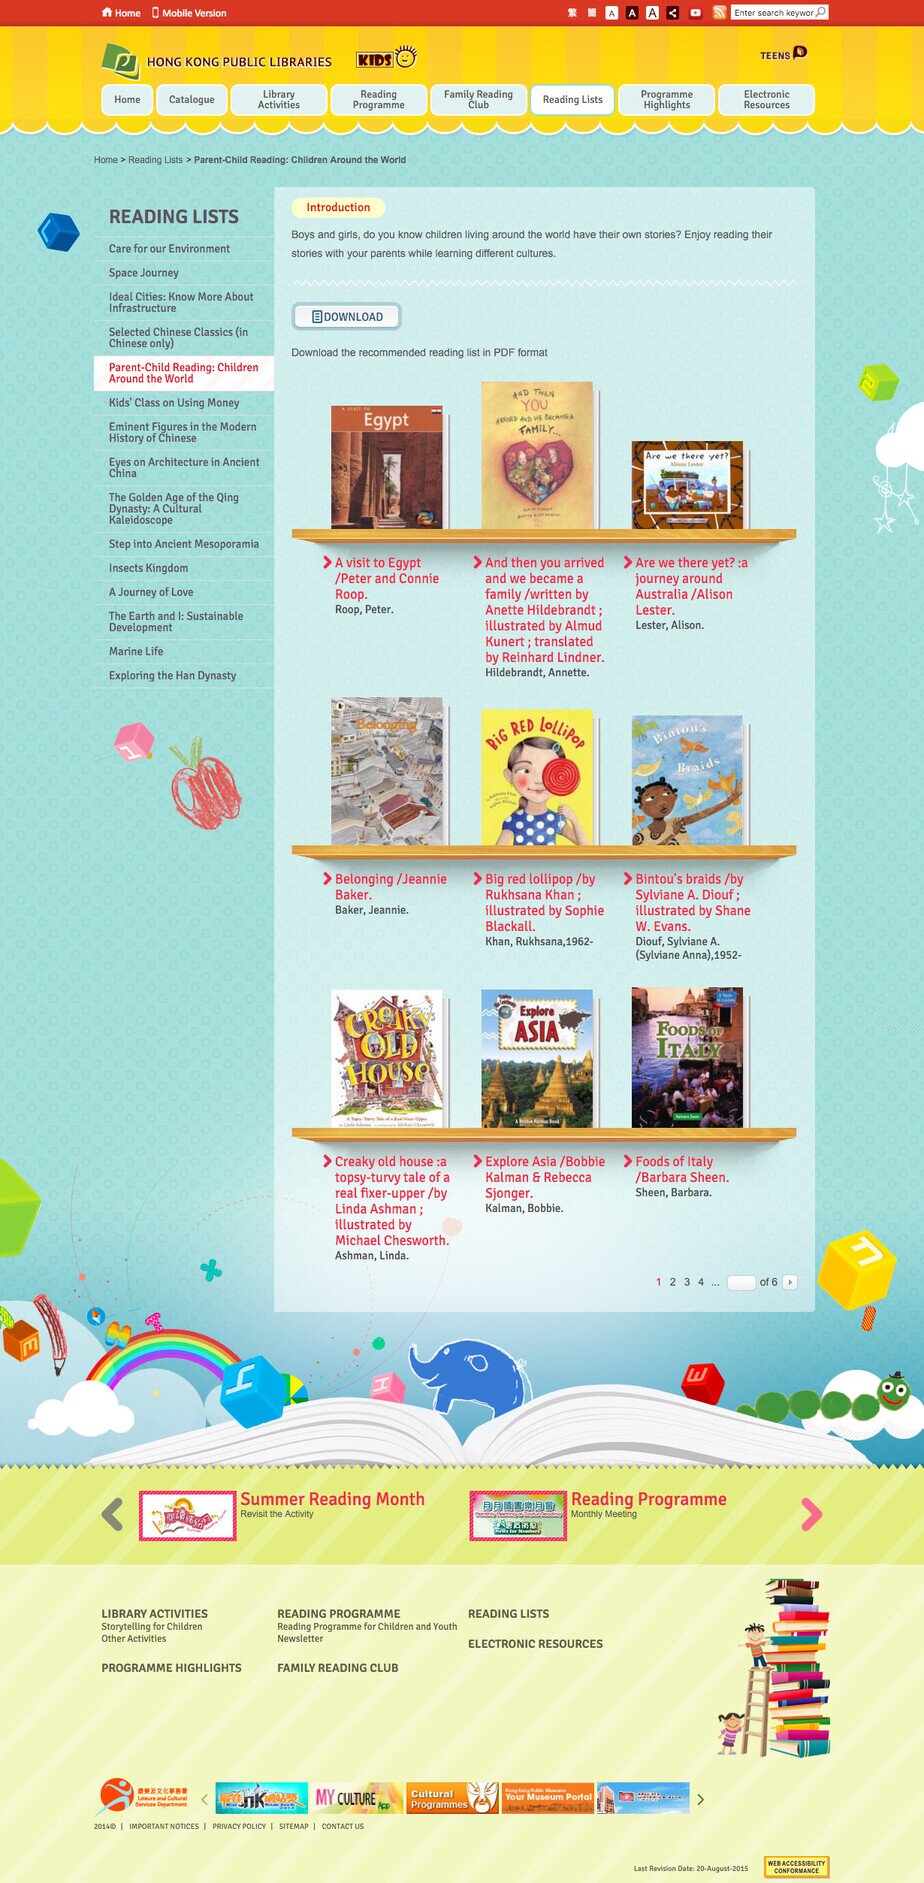 Hong Kong Public Libraries website screenshot for desktop version 6 of 10